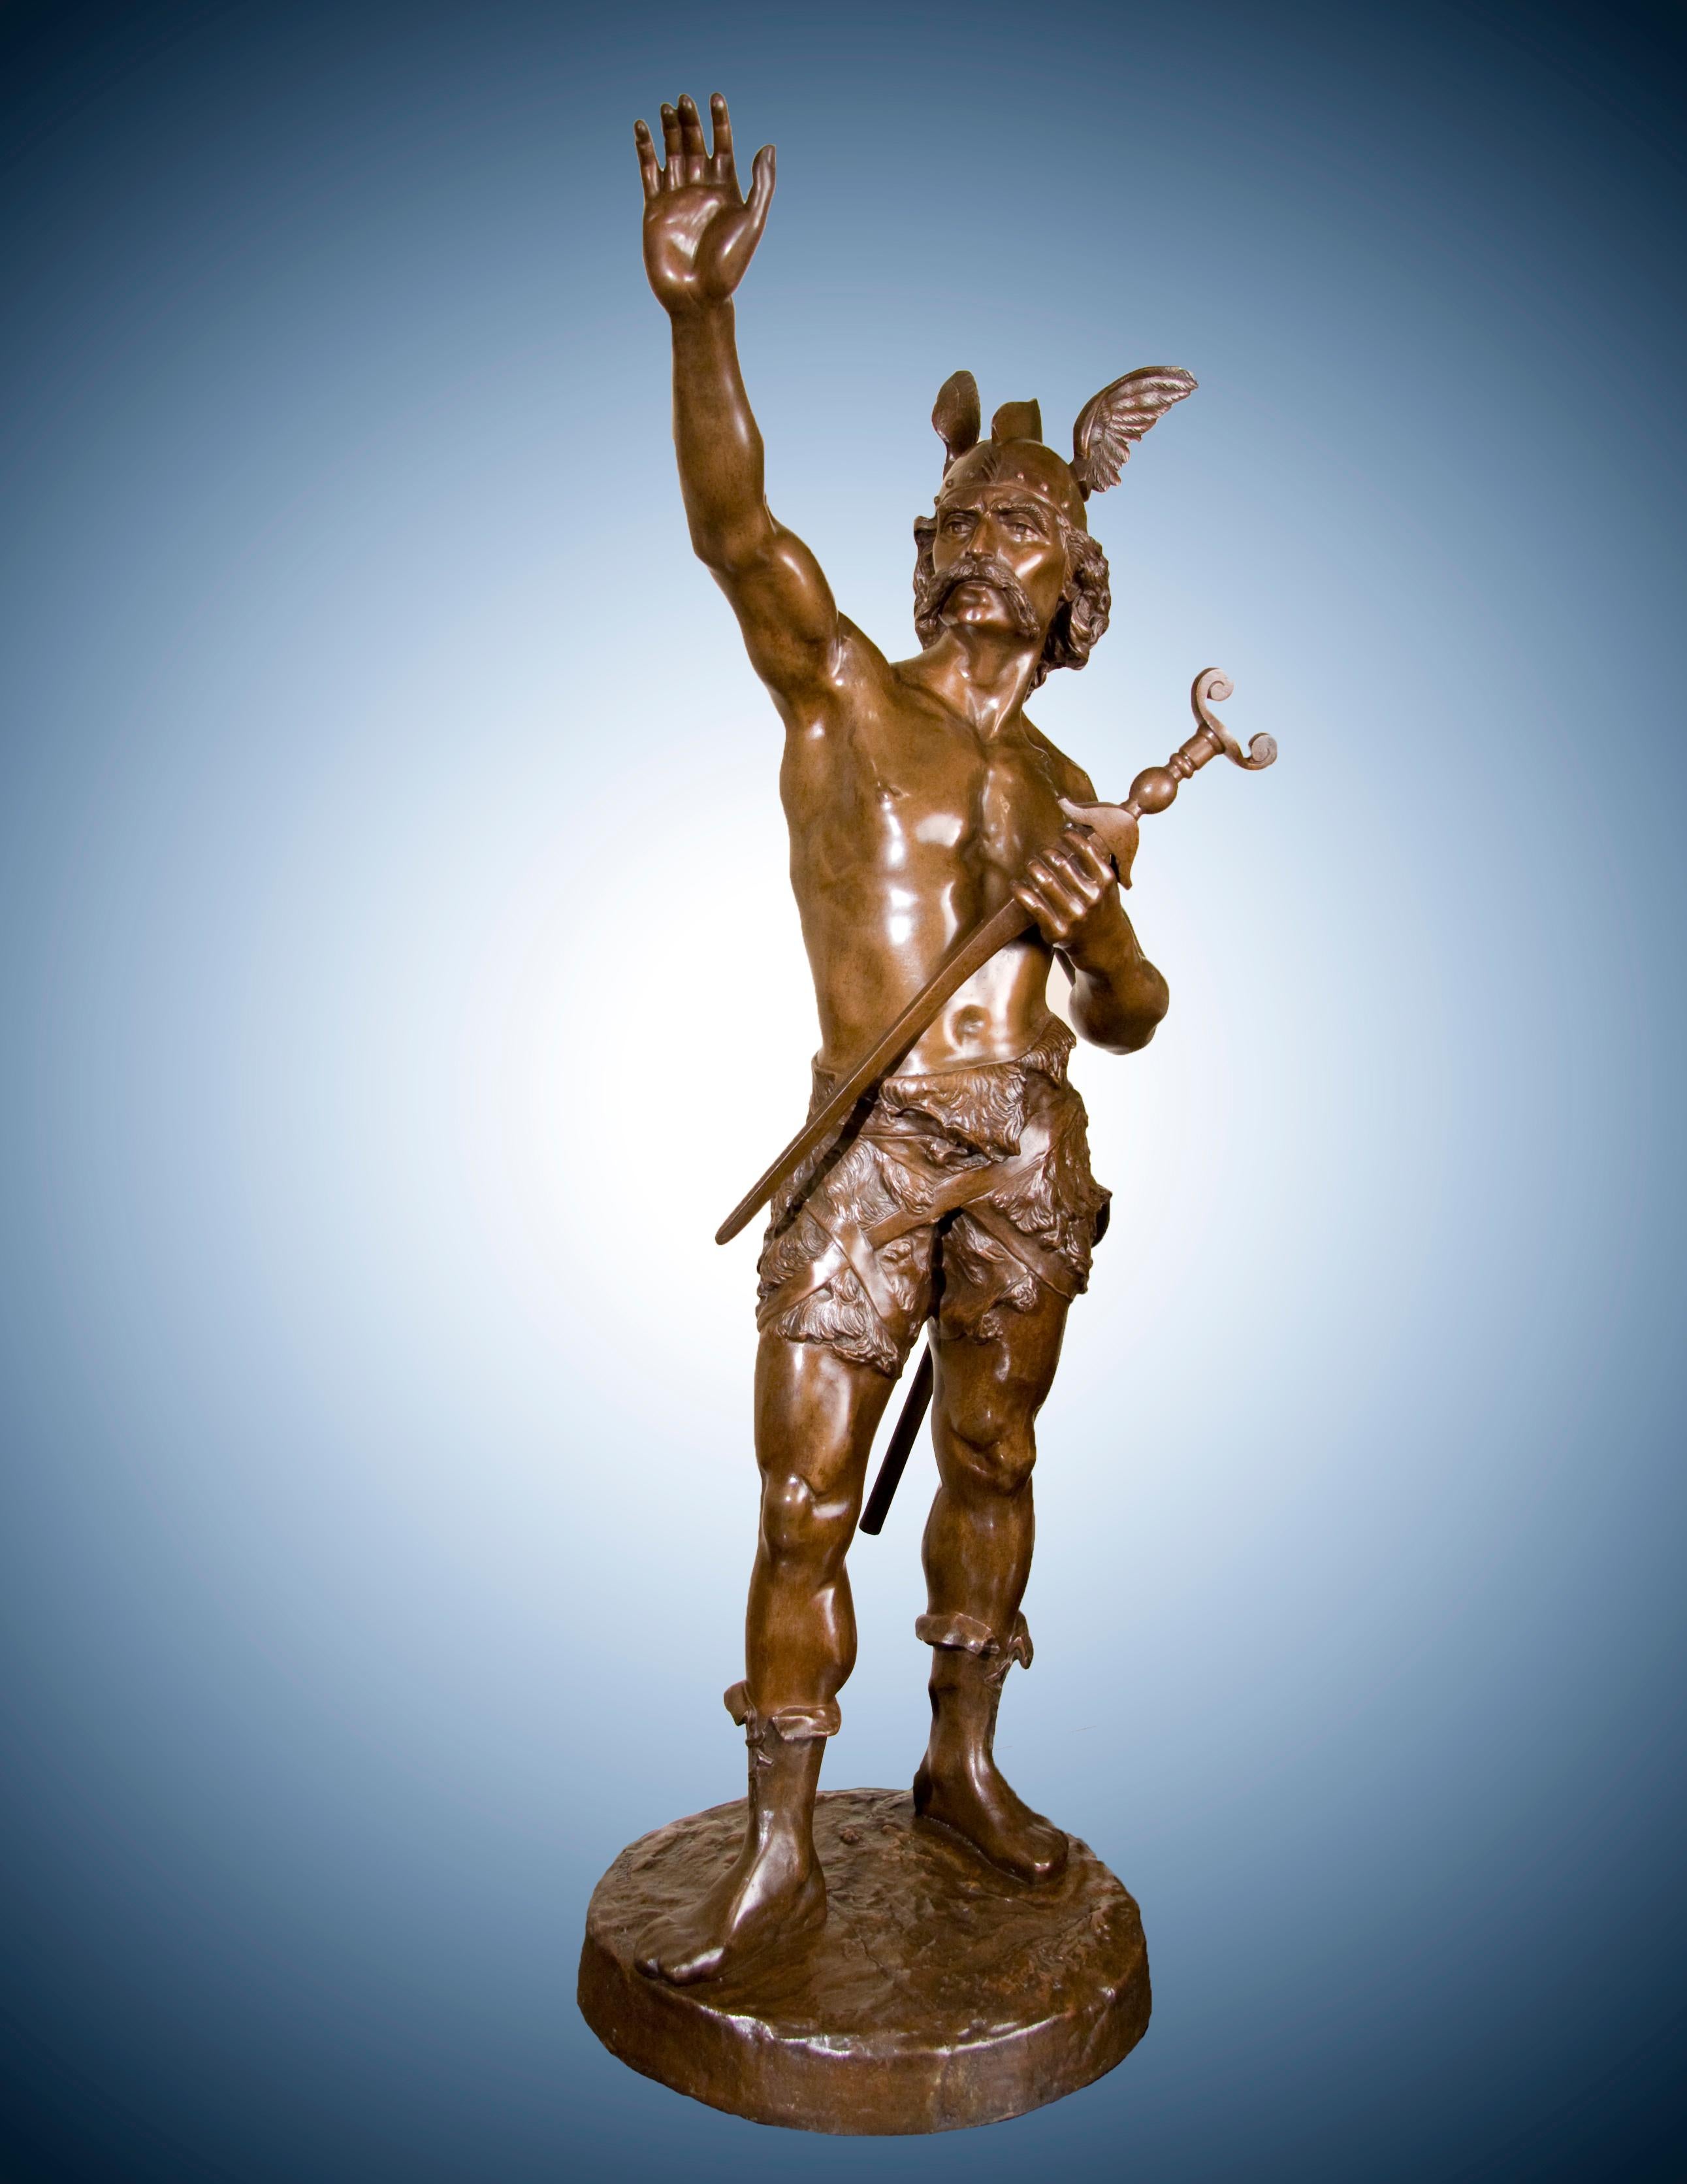 Emile Laporte Figurative Sculpture - 19th Century Semi-Nude Male Bronze Viking Warrior Sculpture, titled "The Gaul"